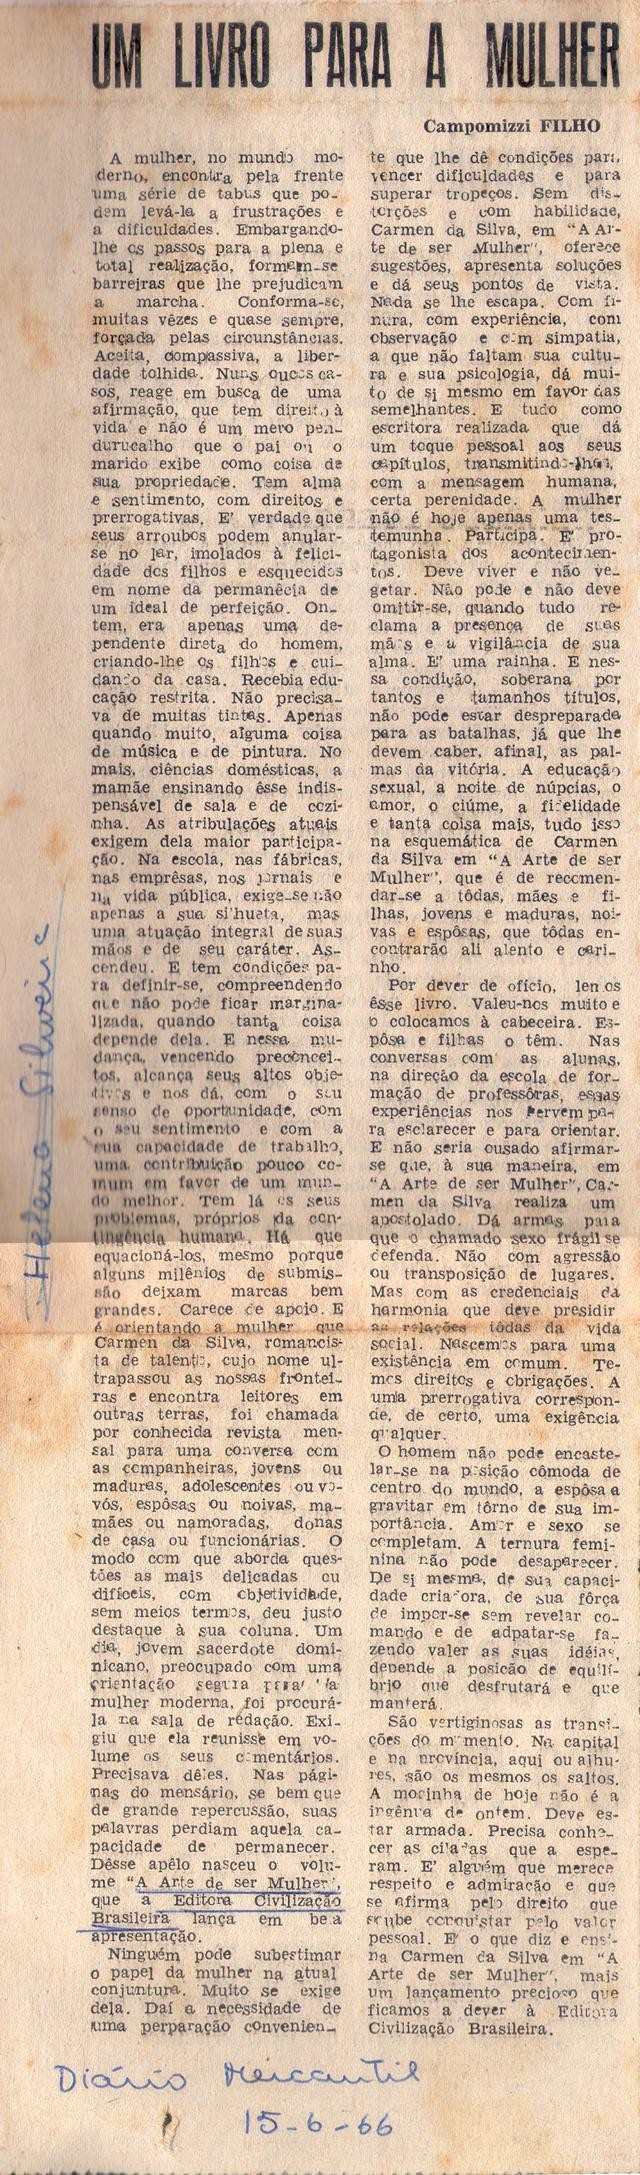 15 de Junho de 1966 - Diário Mercantil. Um livro para a mulher.